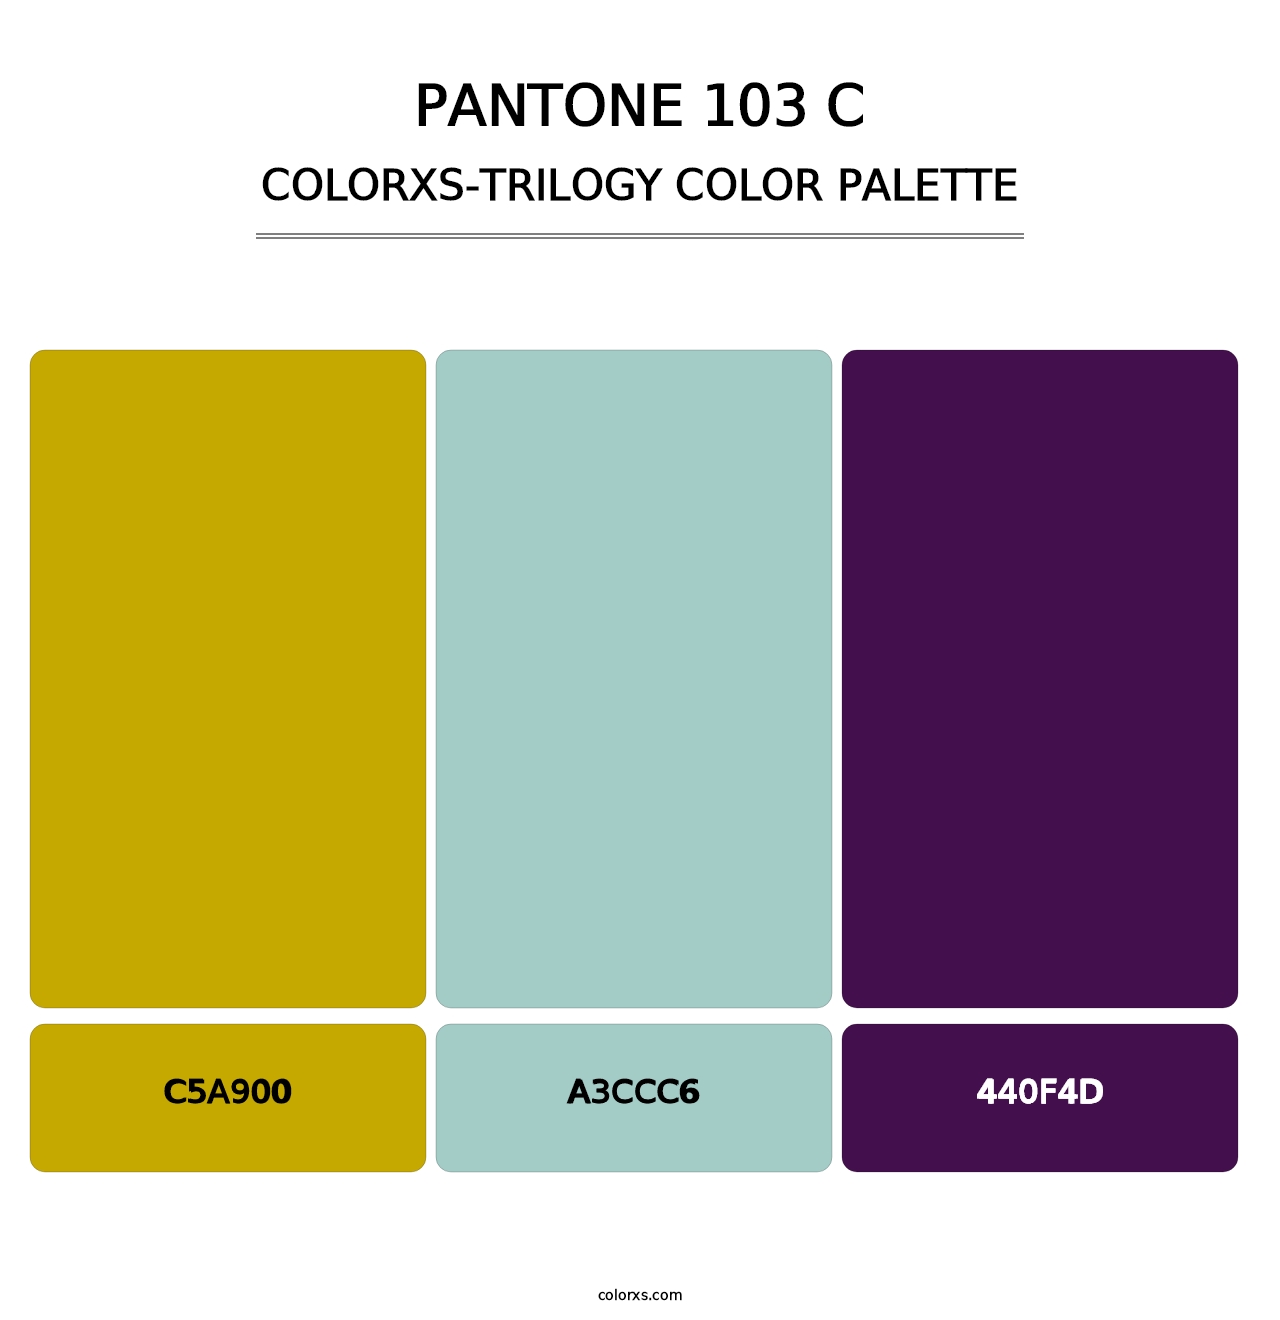 PANTONE 103 C - Colorxs Trilogy Palette